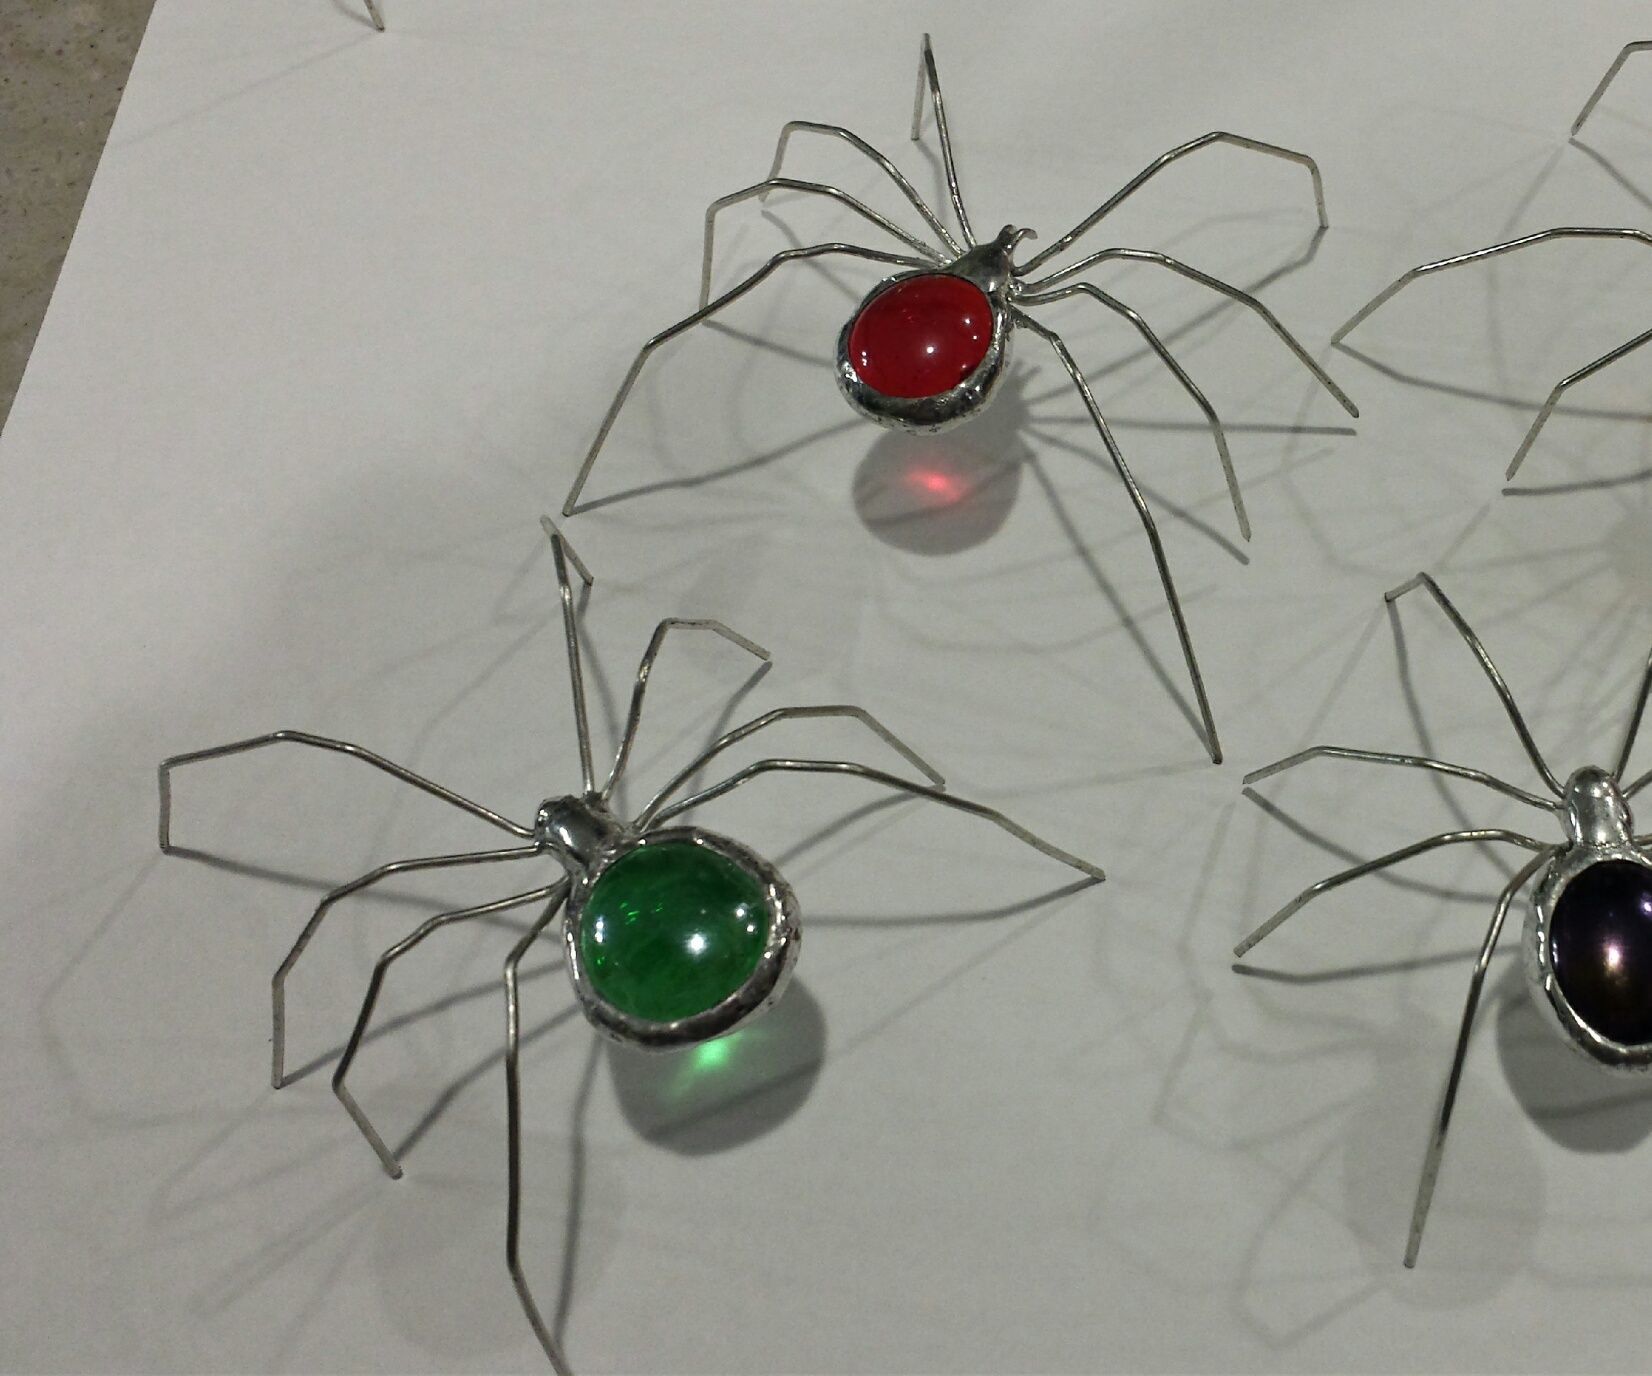 Glass Jewel Spiders